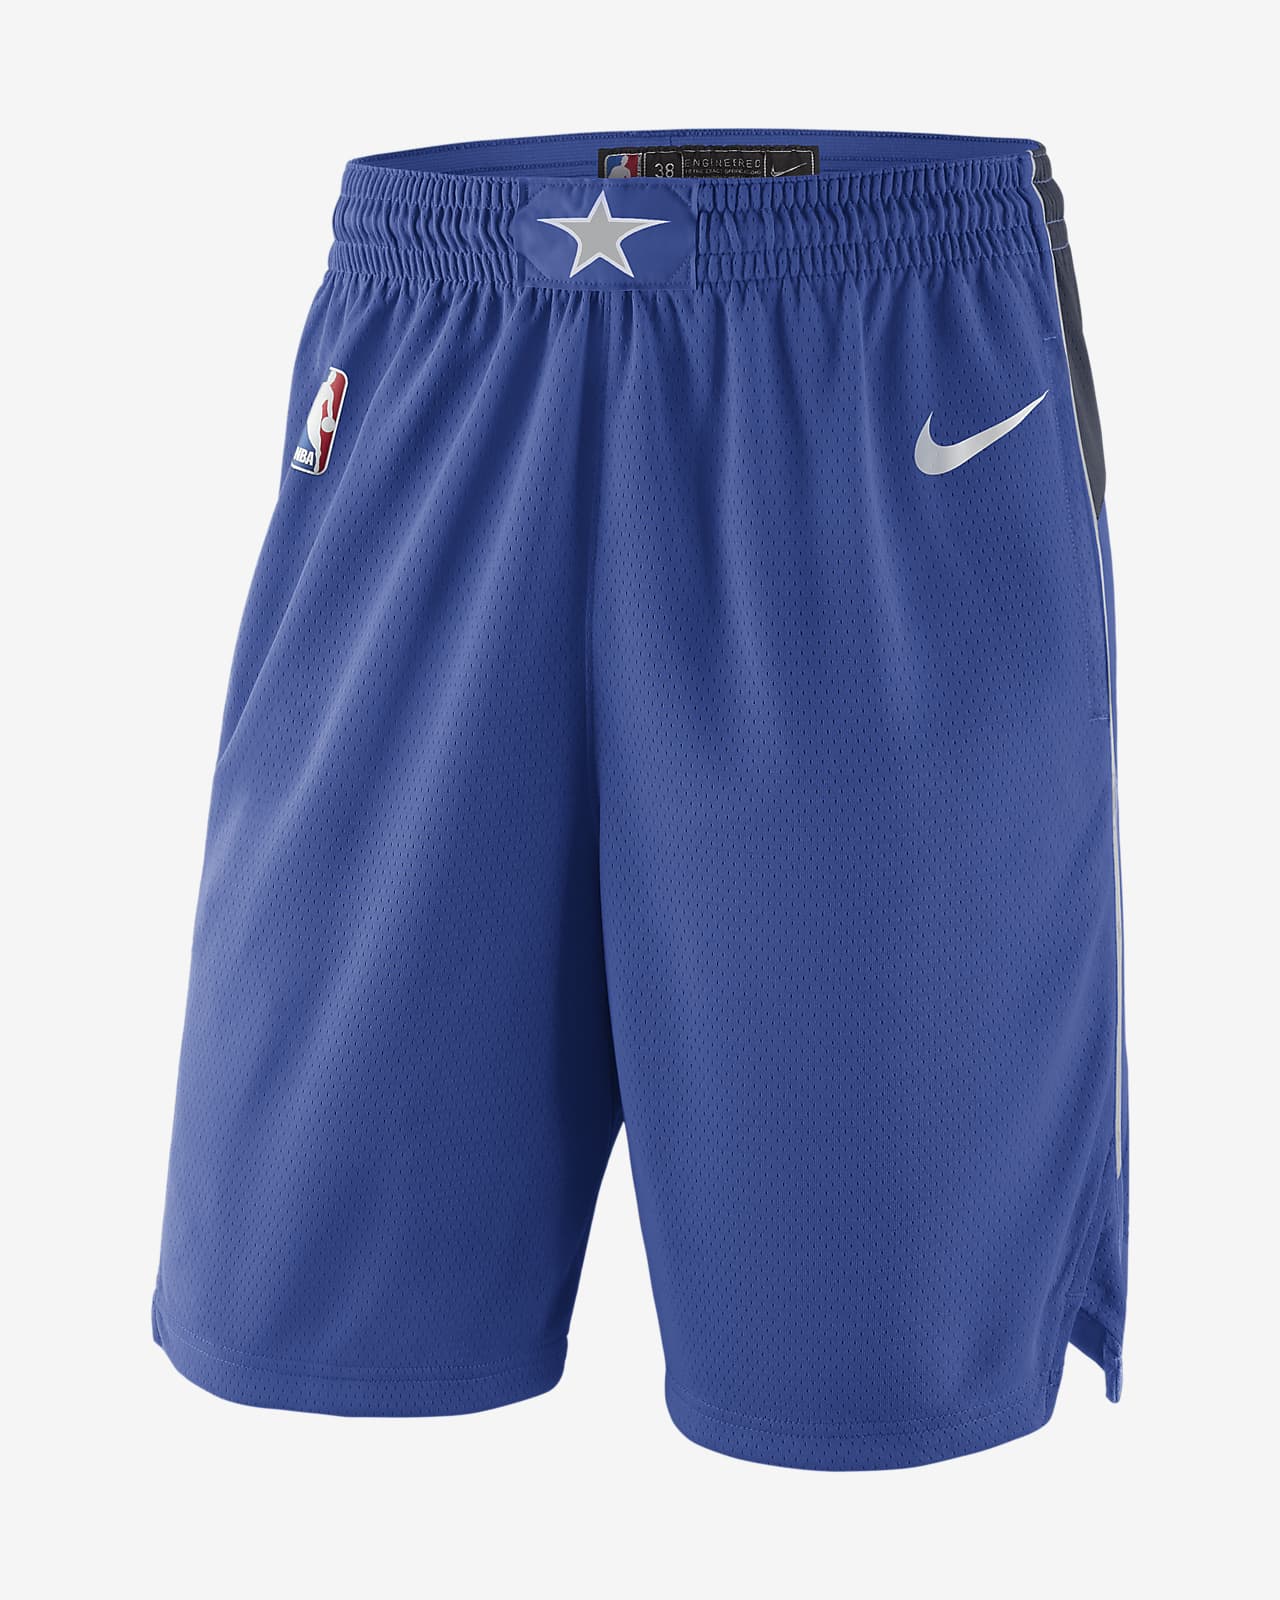 Dallas Mavericks Icon Edition Nike NBA Swingman férfi rövidnadrág